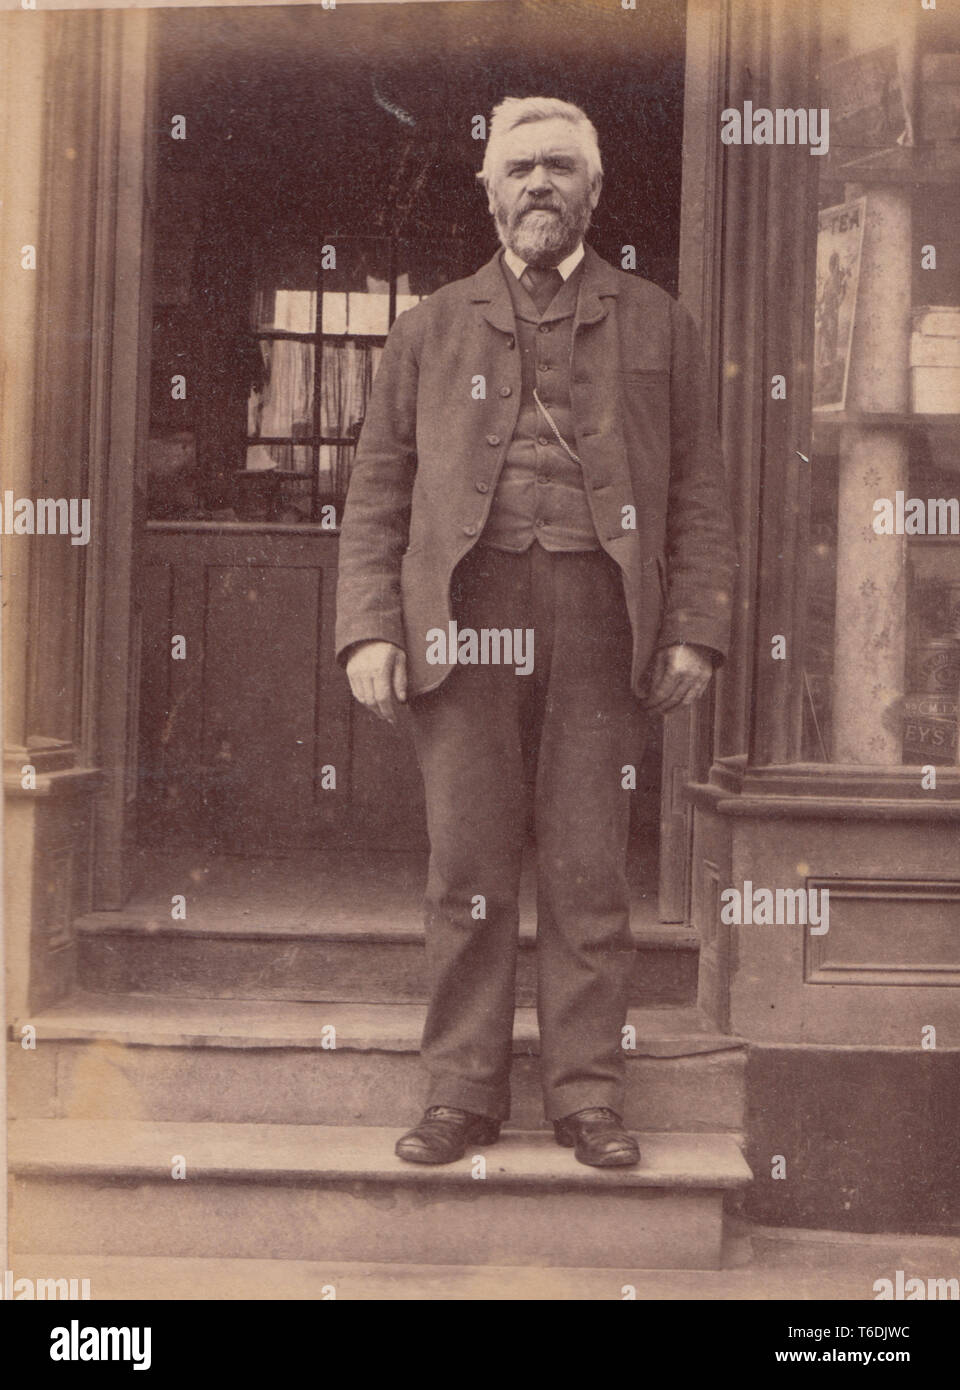 Victorian 1891 Photographie montrant un homme se tenait habillés à l'entrée d'une boutique ou des rafraîchissements au Village de Borth, Ceredigion, pays de Galles Banque D'Images